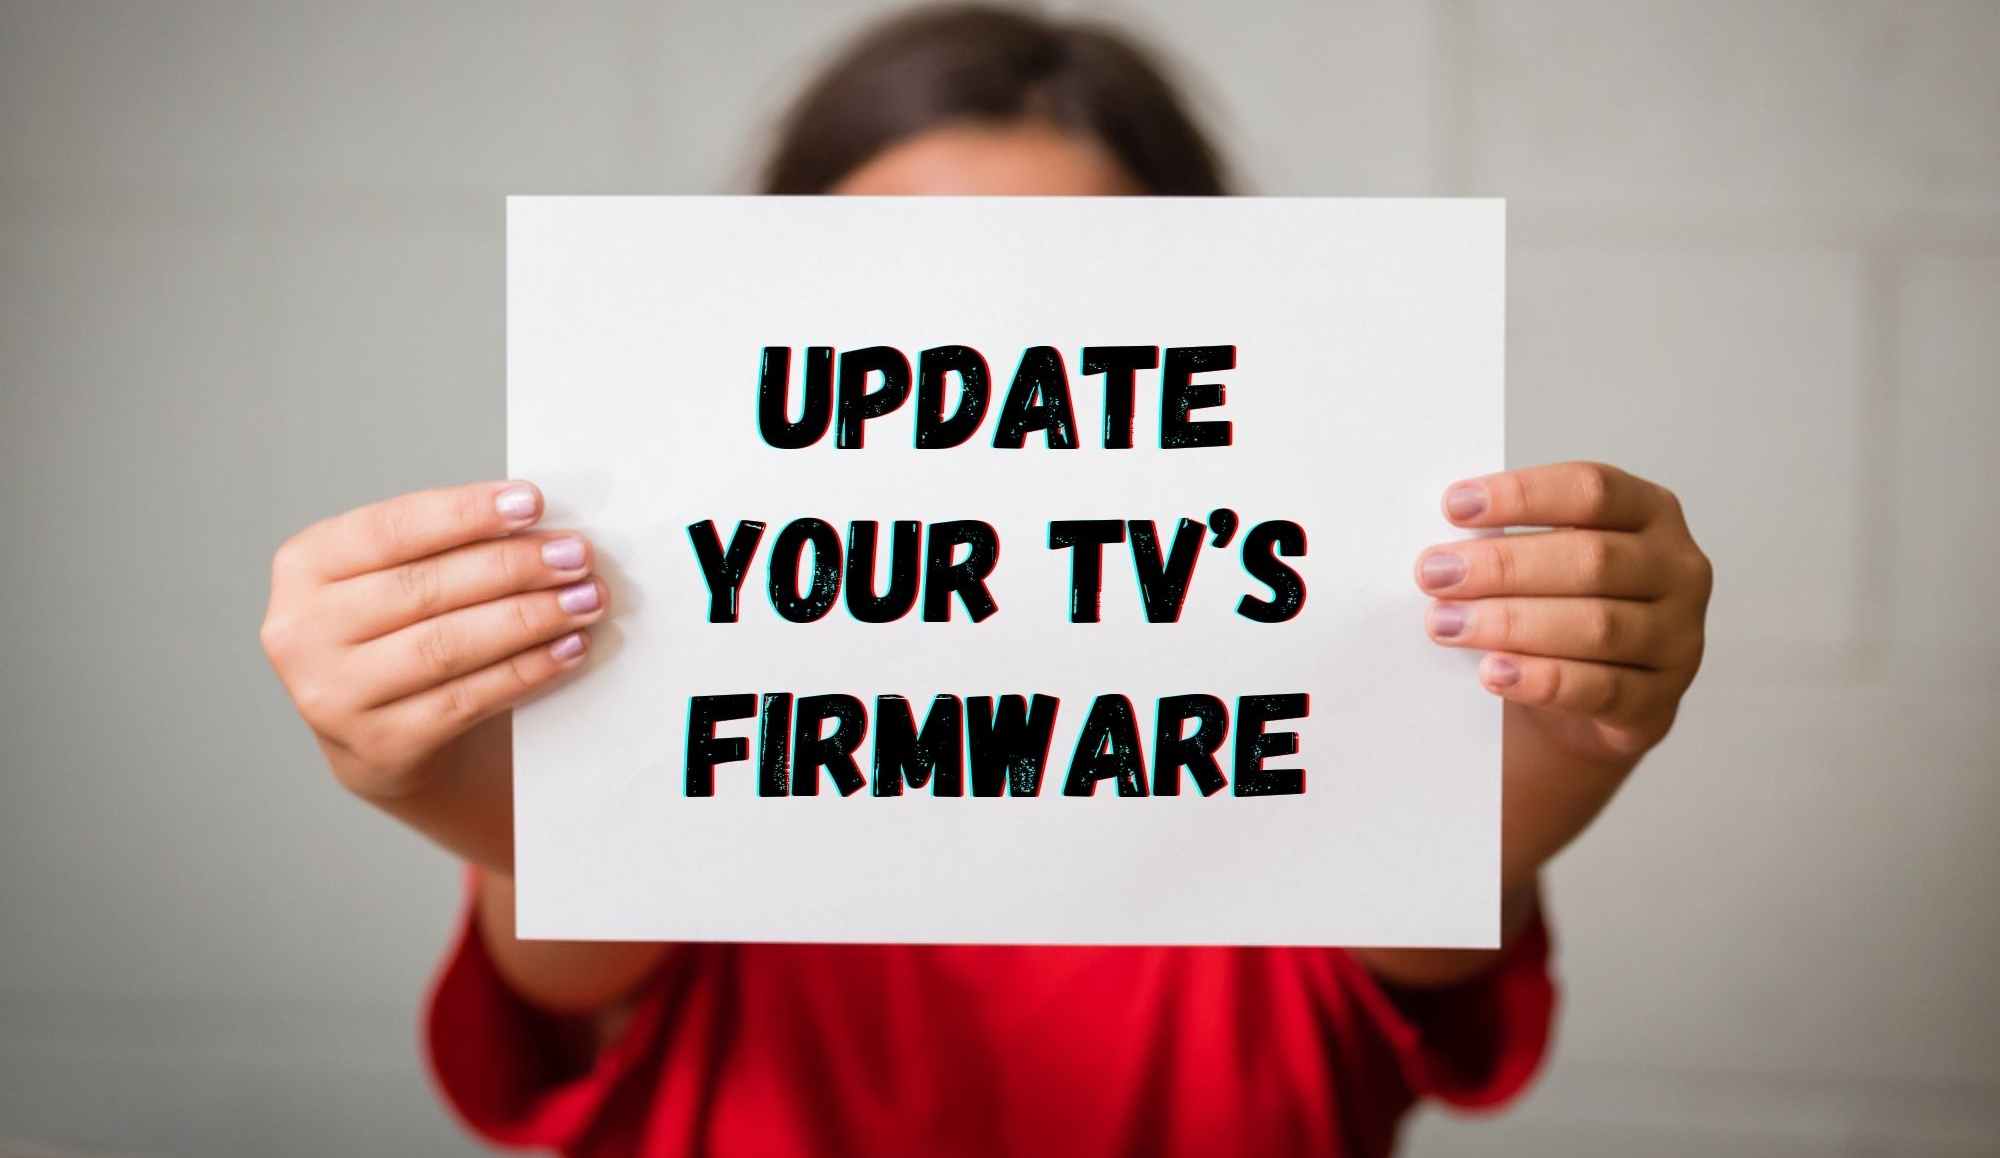 Update your TV’s Firmware